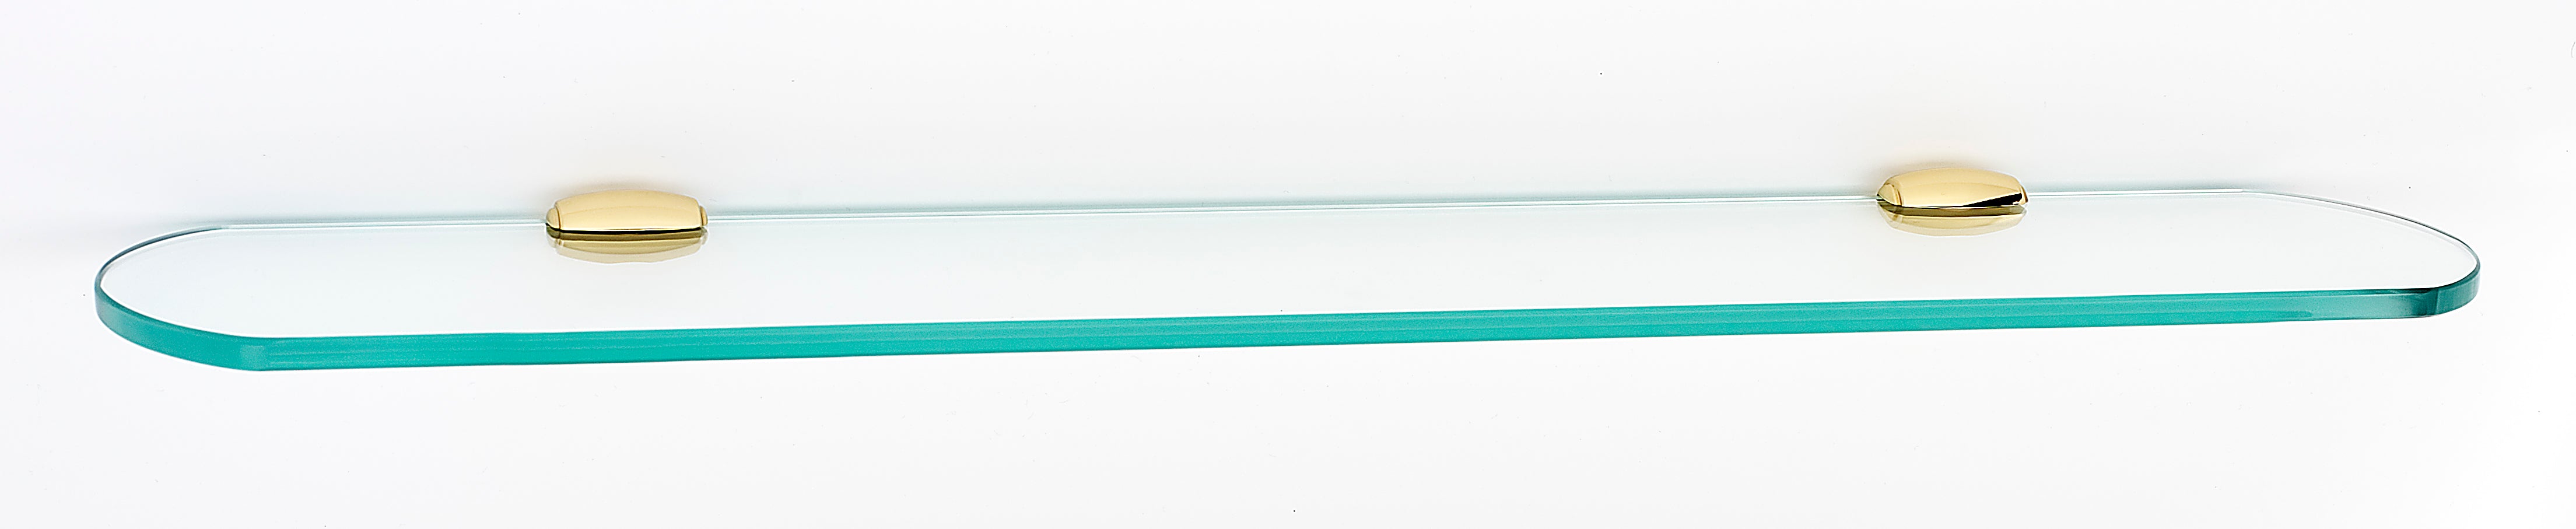 Alno Royale Bath 24" Glass Shelf w/Brackets